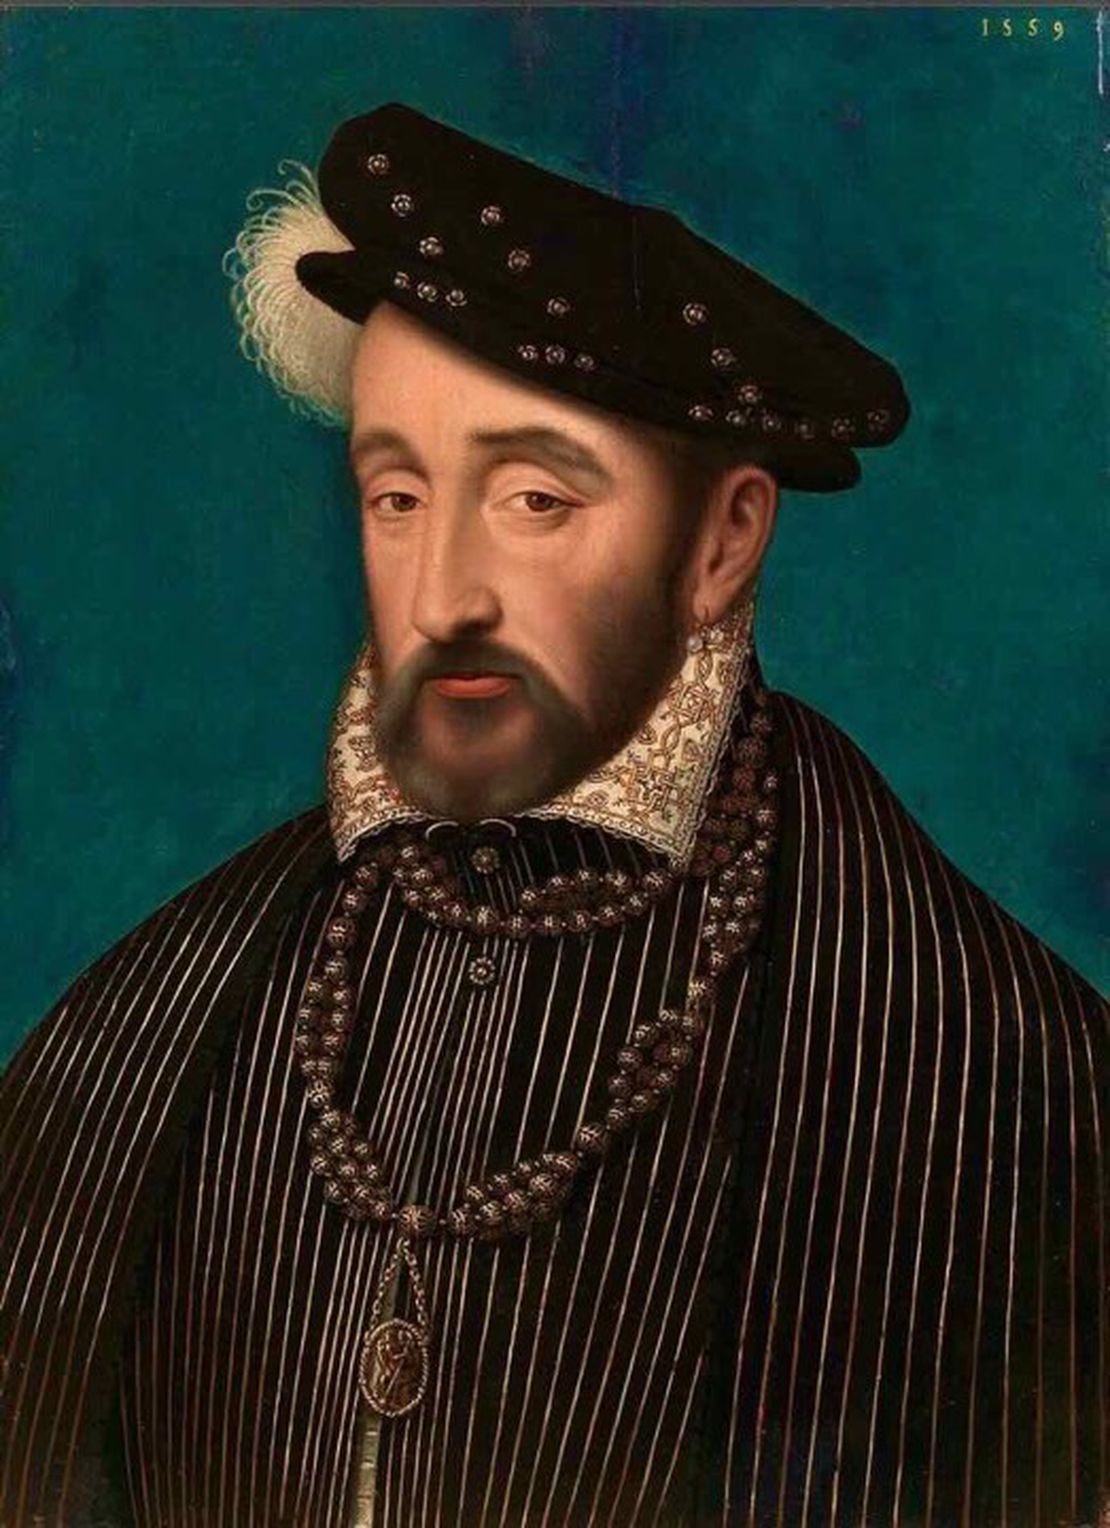 King Henri of France, died